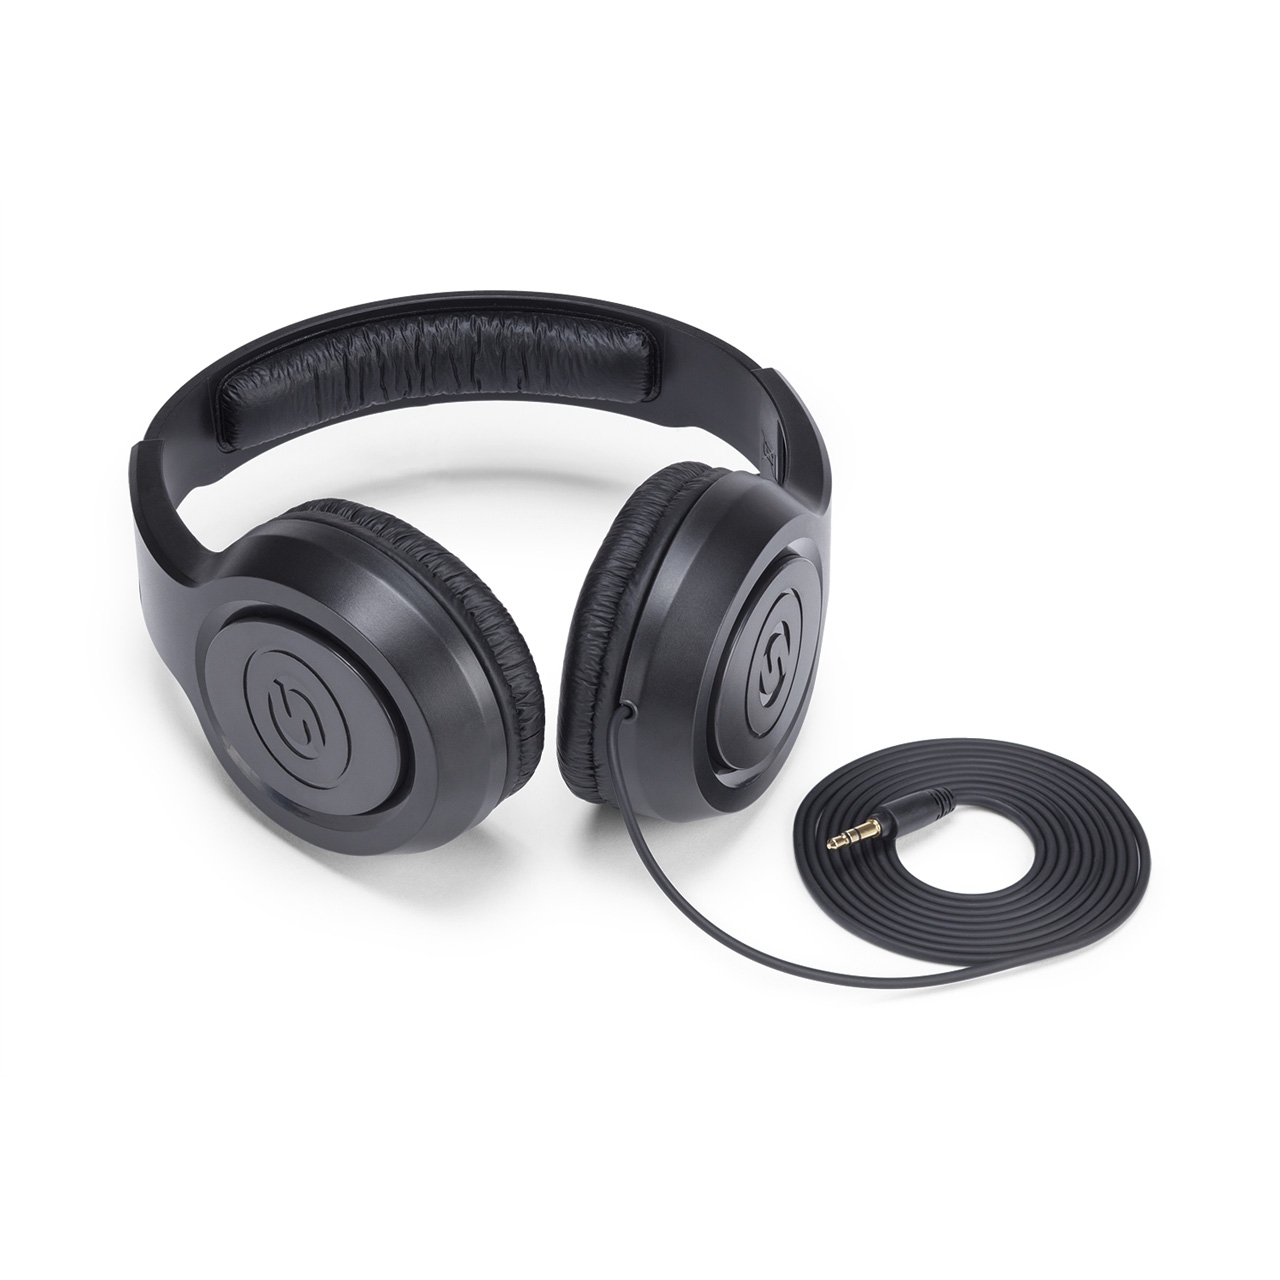 Samson SR350 - Over-Ear Stereo Headphone